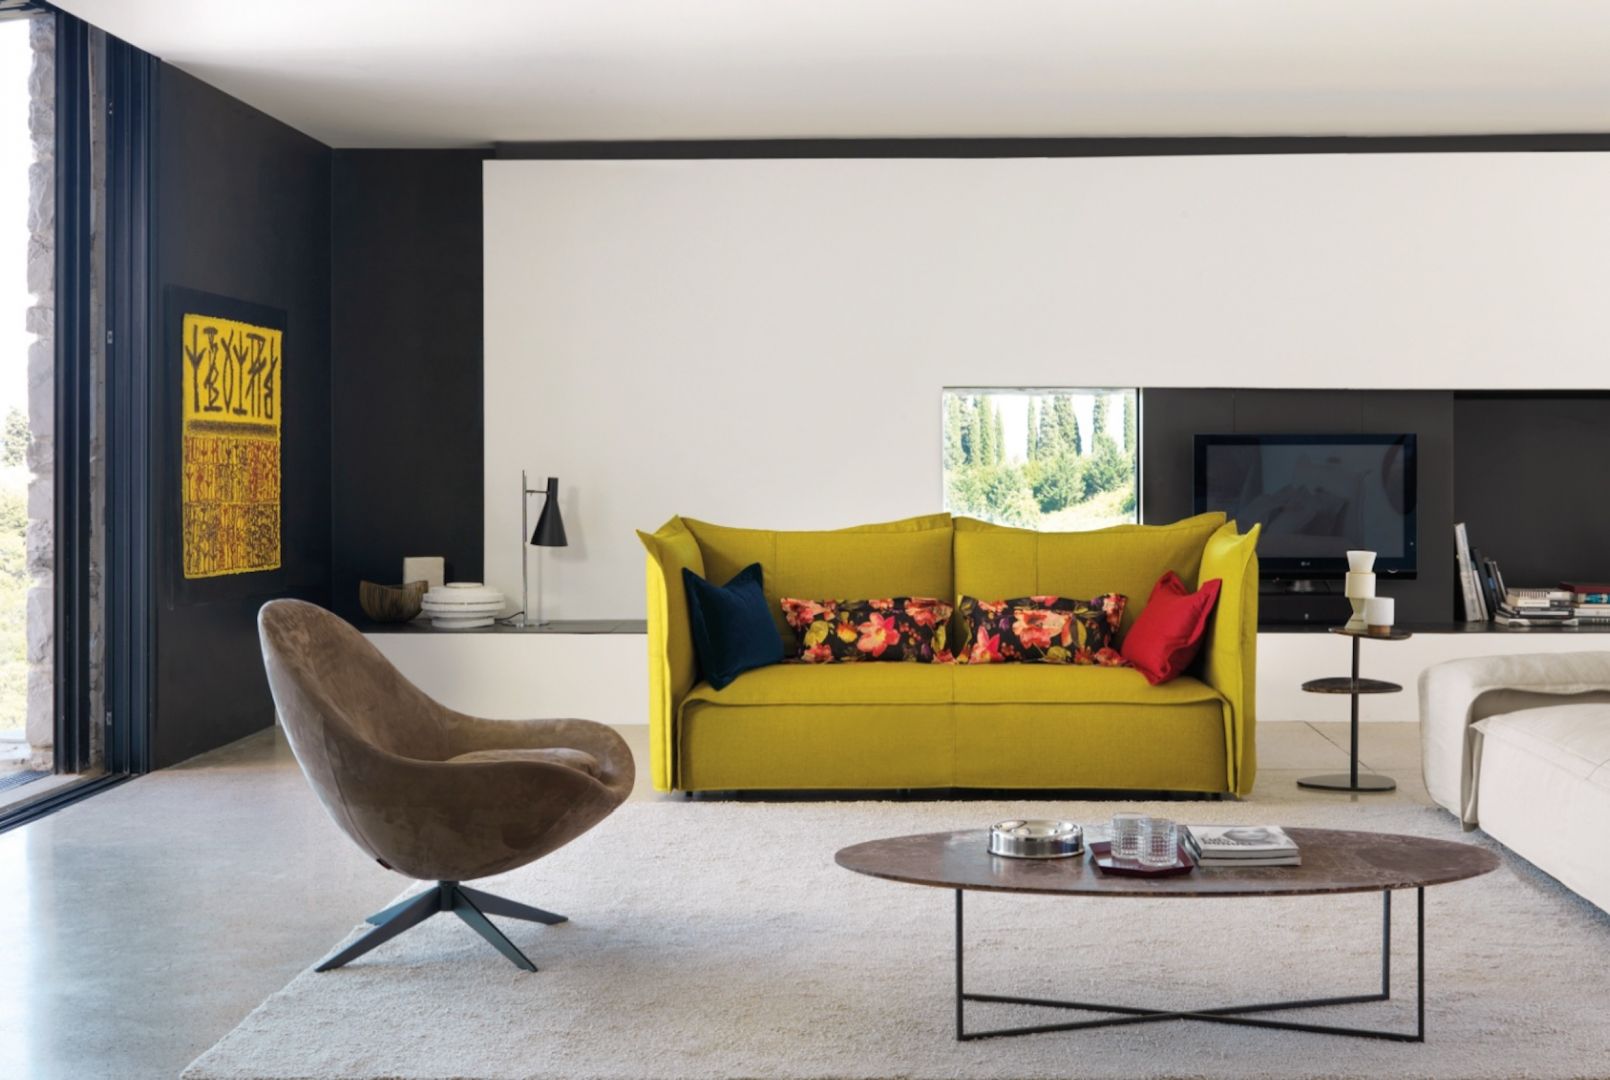 Sofa i fotel Britt to nowoczesne meble w soczystych kolorach. Fot. Desiree